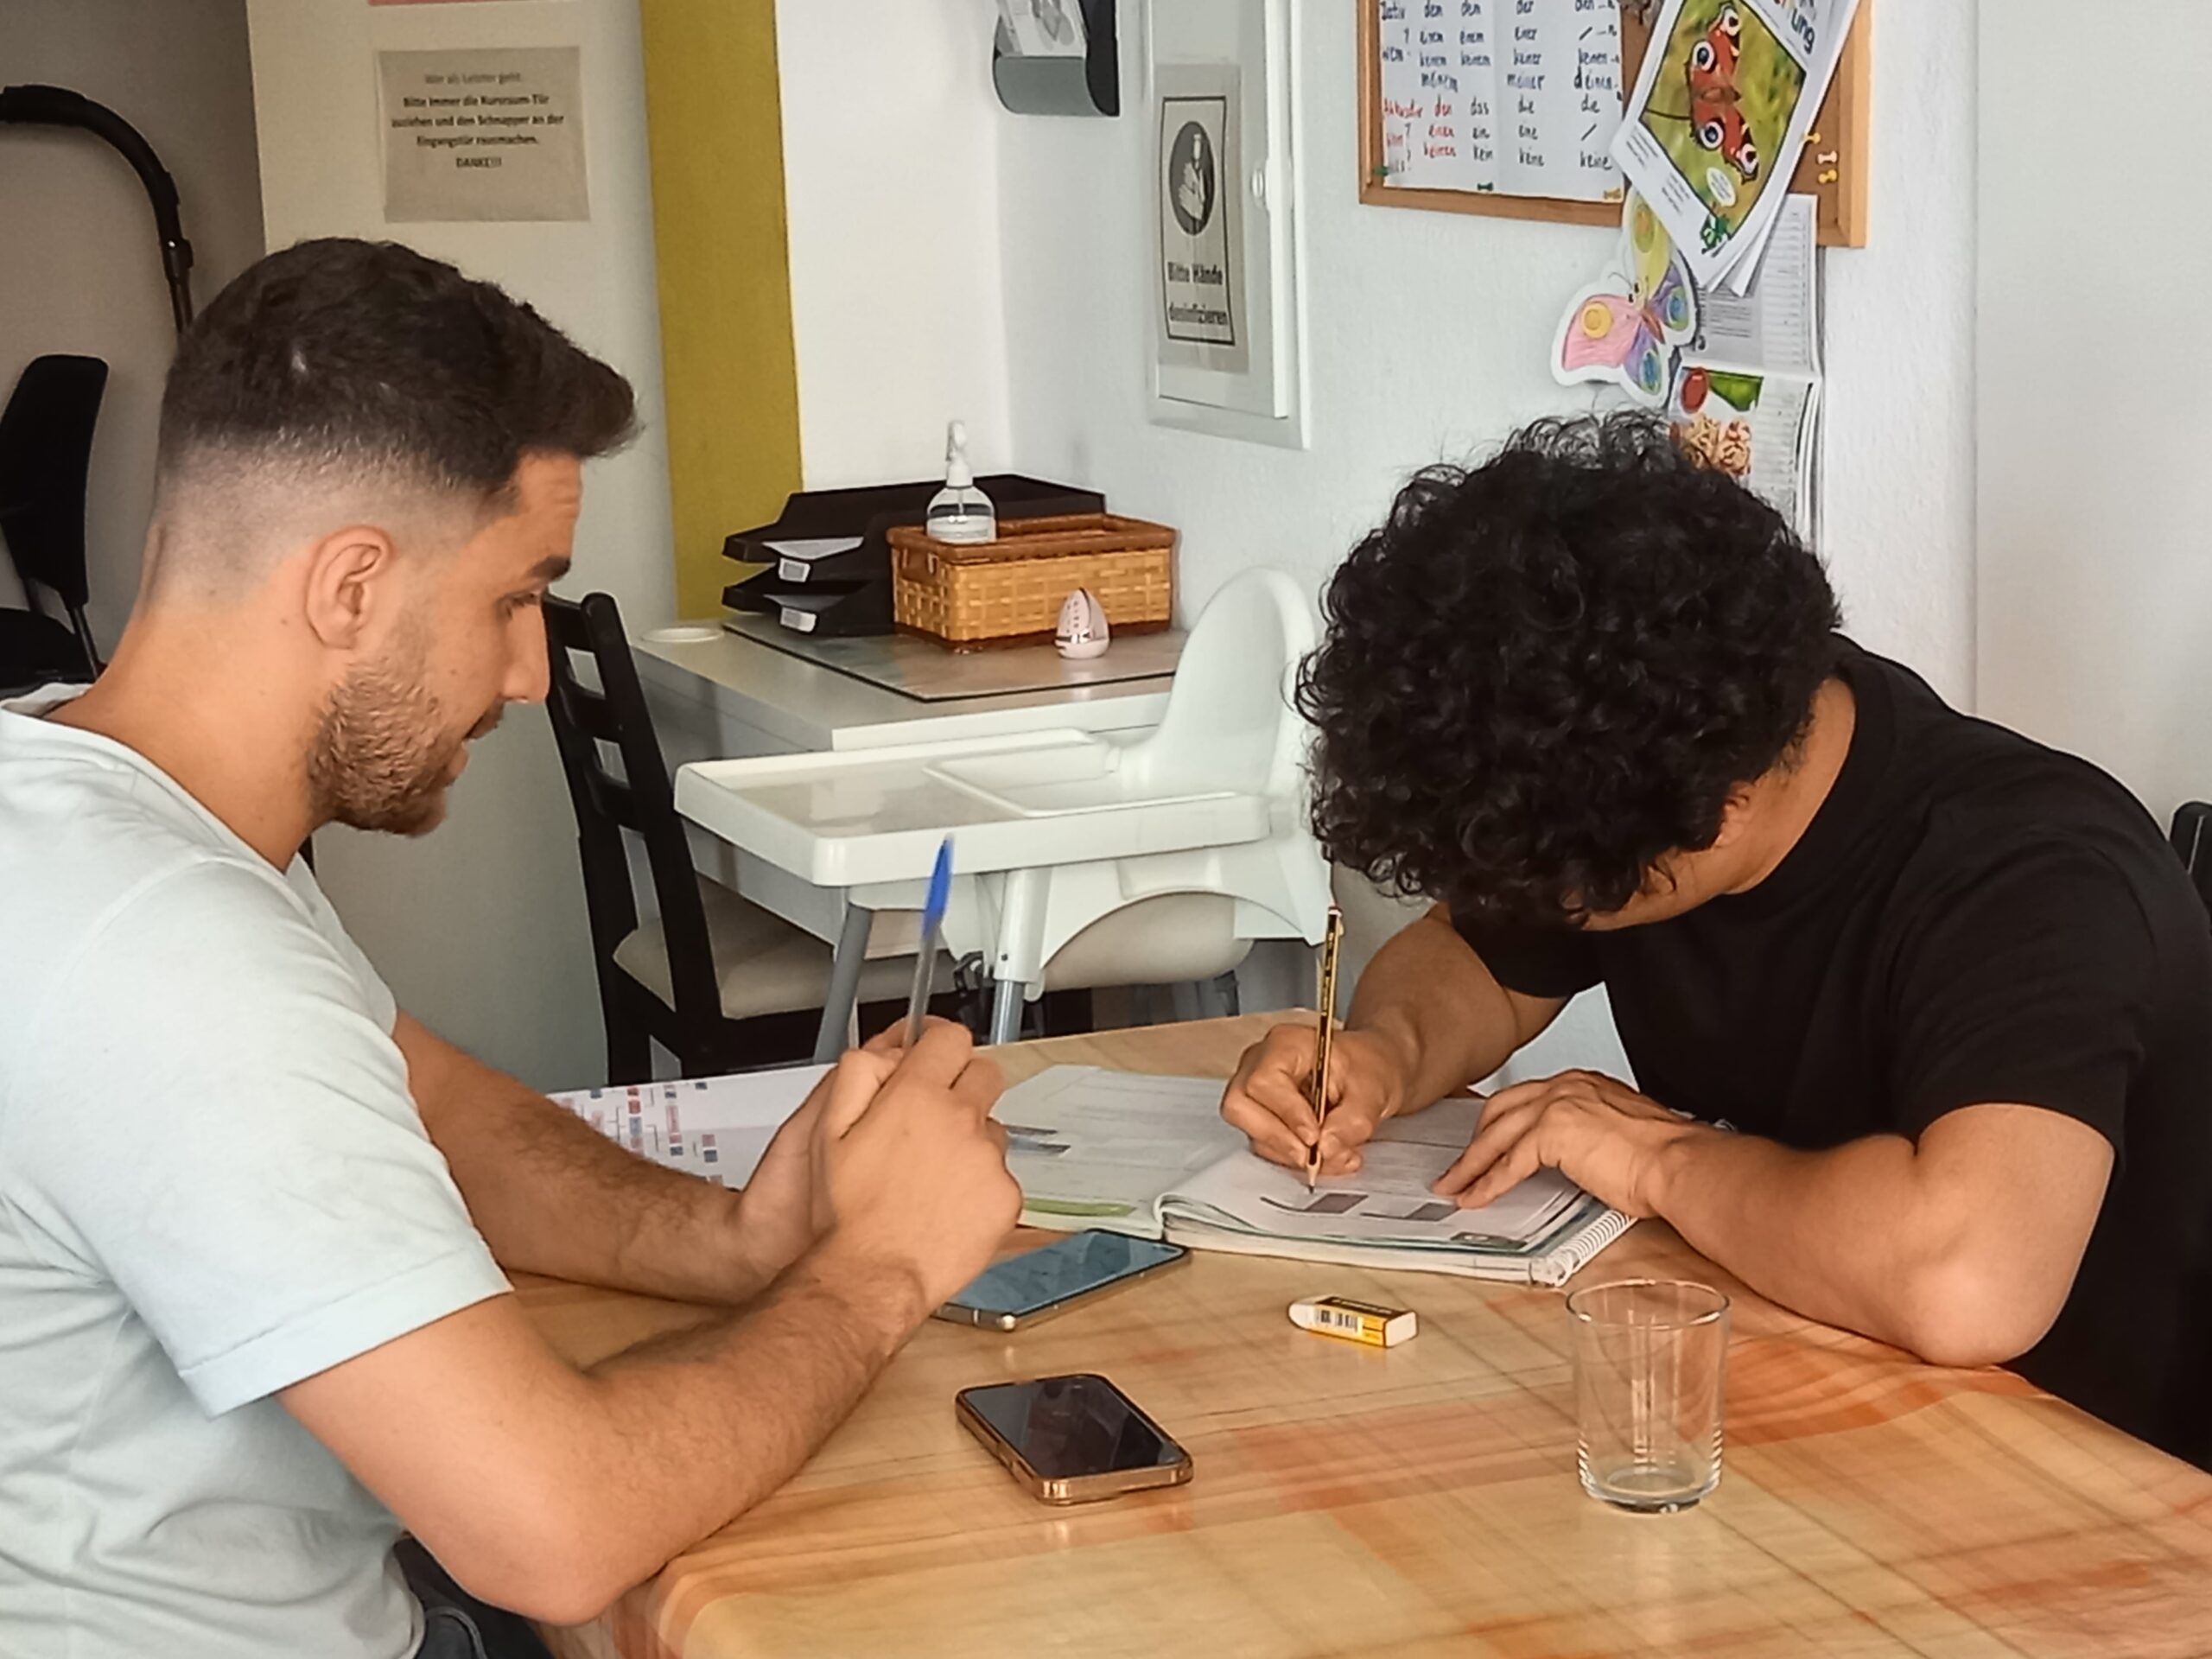 zwei junge Männer sitzen am Tisch und üben Deutsch